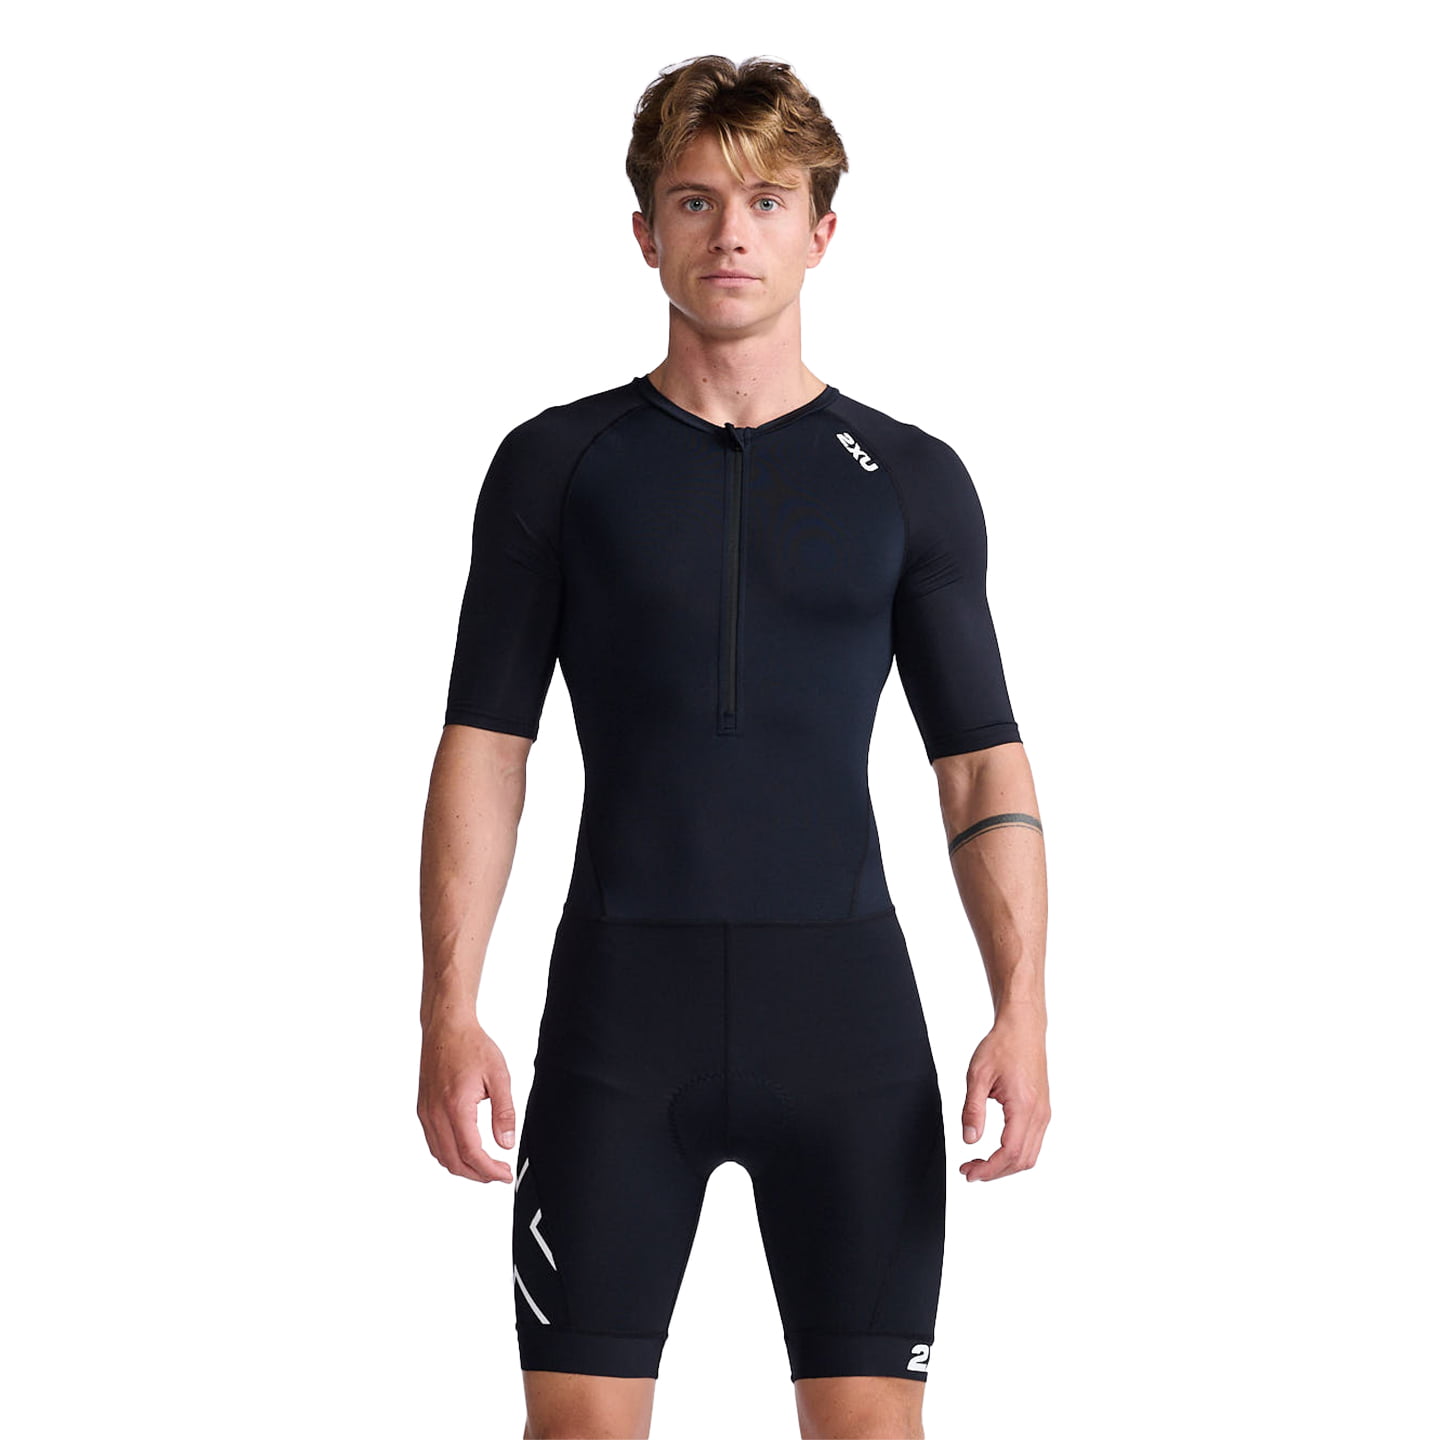 2XU Core Tri Suit Tri Suit, for men, size M, Triathlon suit, Triathlon clothes